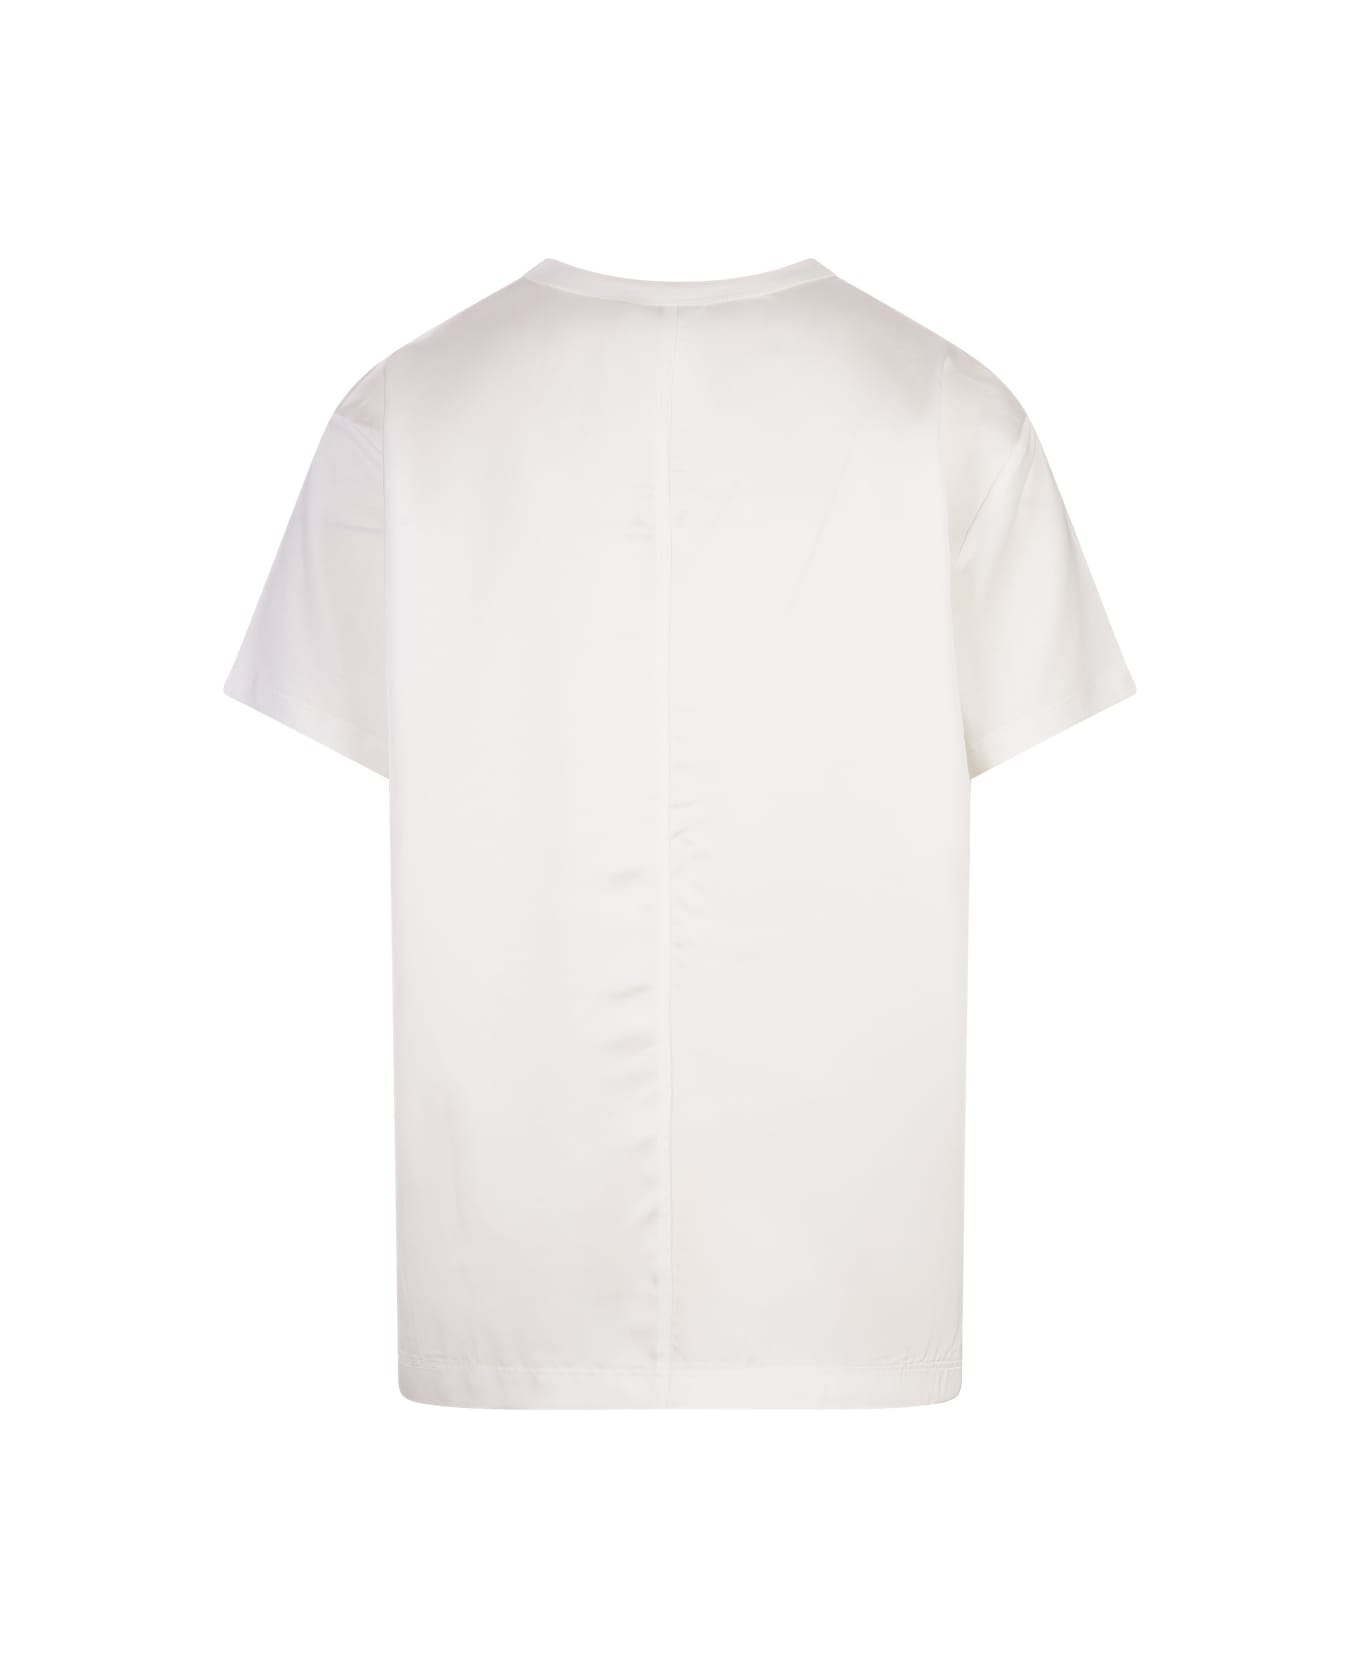 Fabiana Filippi White Cotton And Viscose T-shirt - White